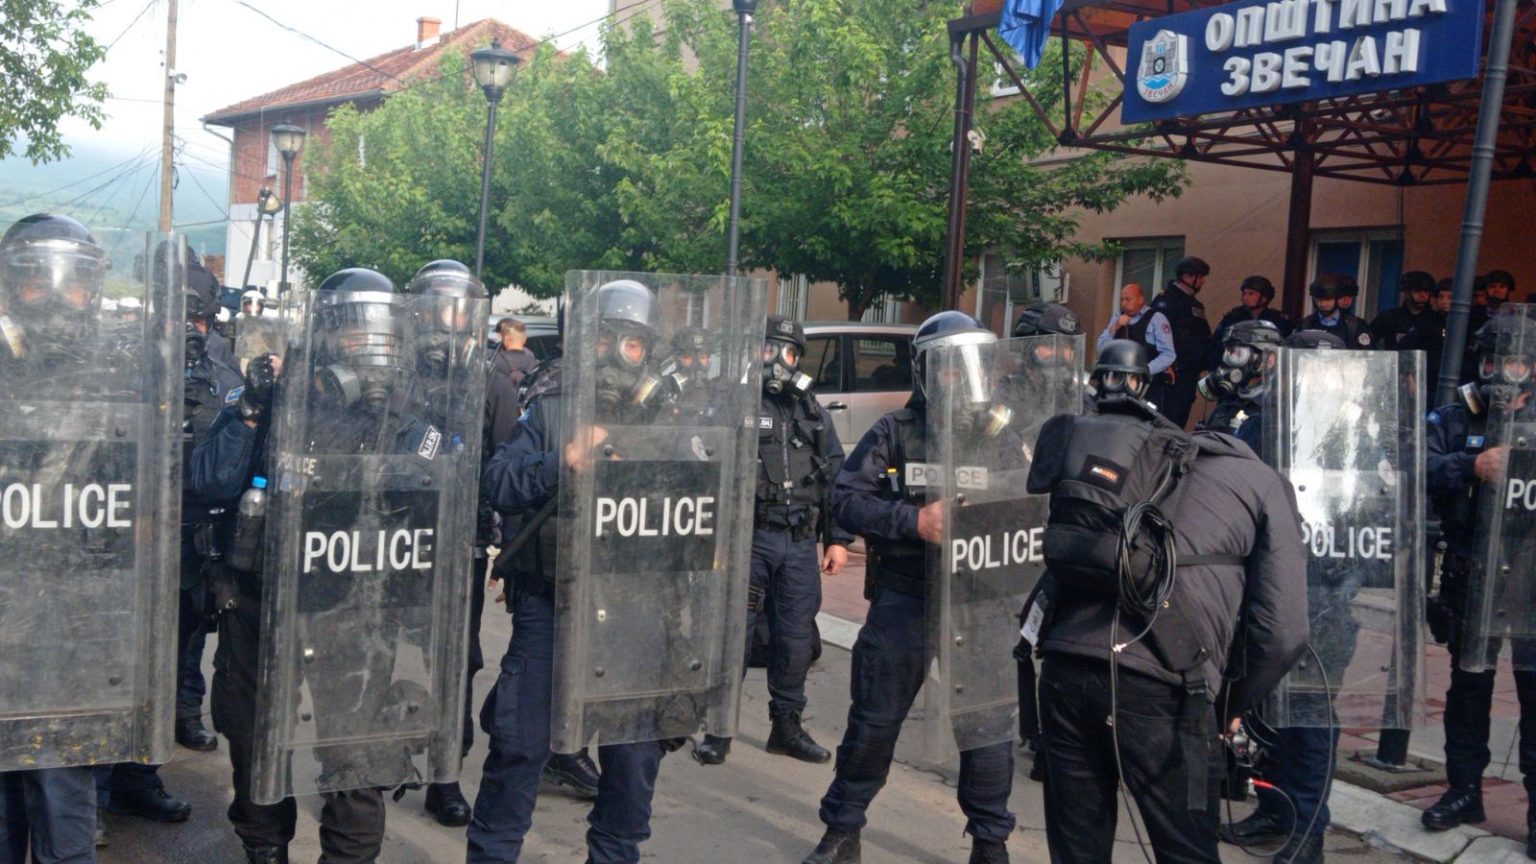 Sërish tensione në veri të Kosovës, serbët mblidhen para komunave, policia hedh gaz lotsjellës në Zveçan